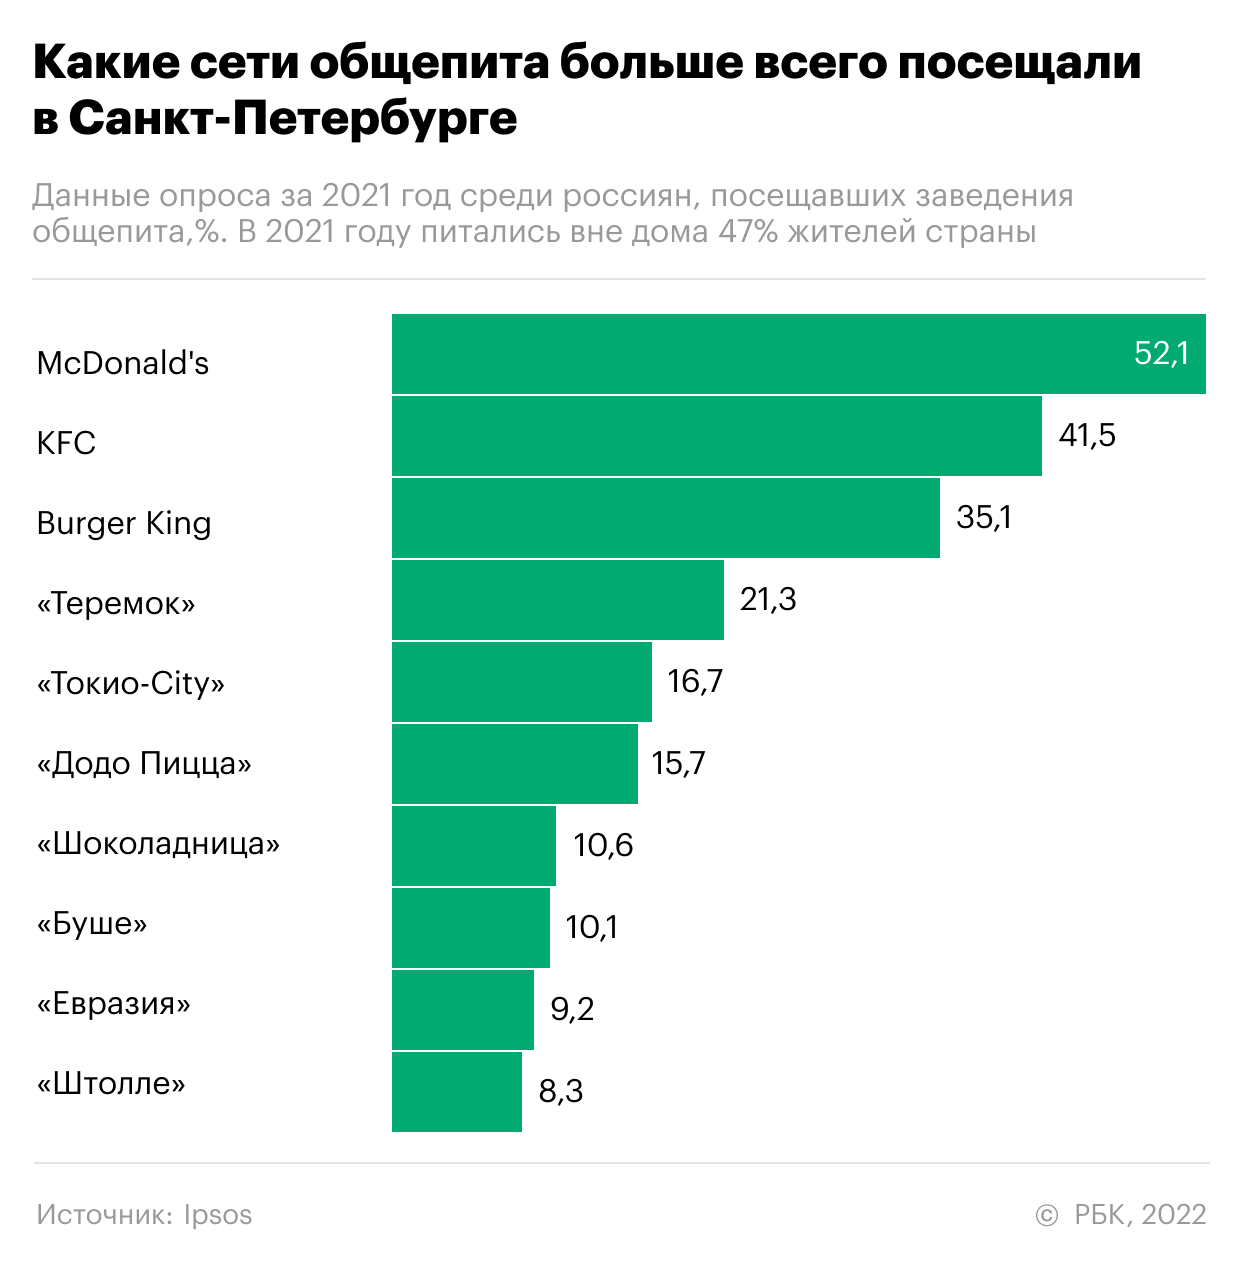 «Коммерсантъ» узнал о попытке франчайзи KFC продать бизнес в России